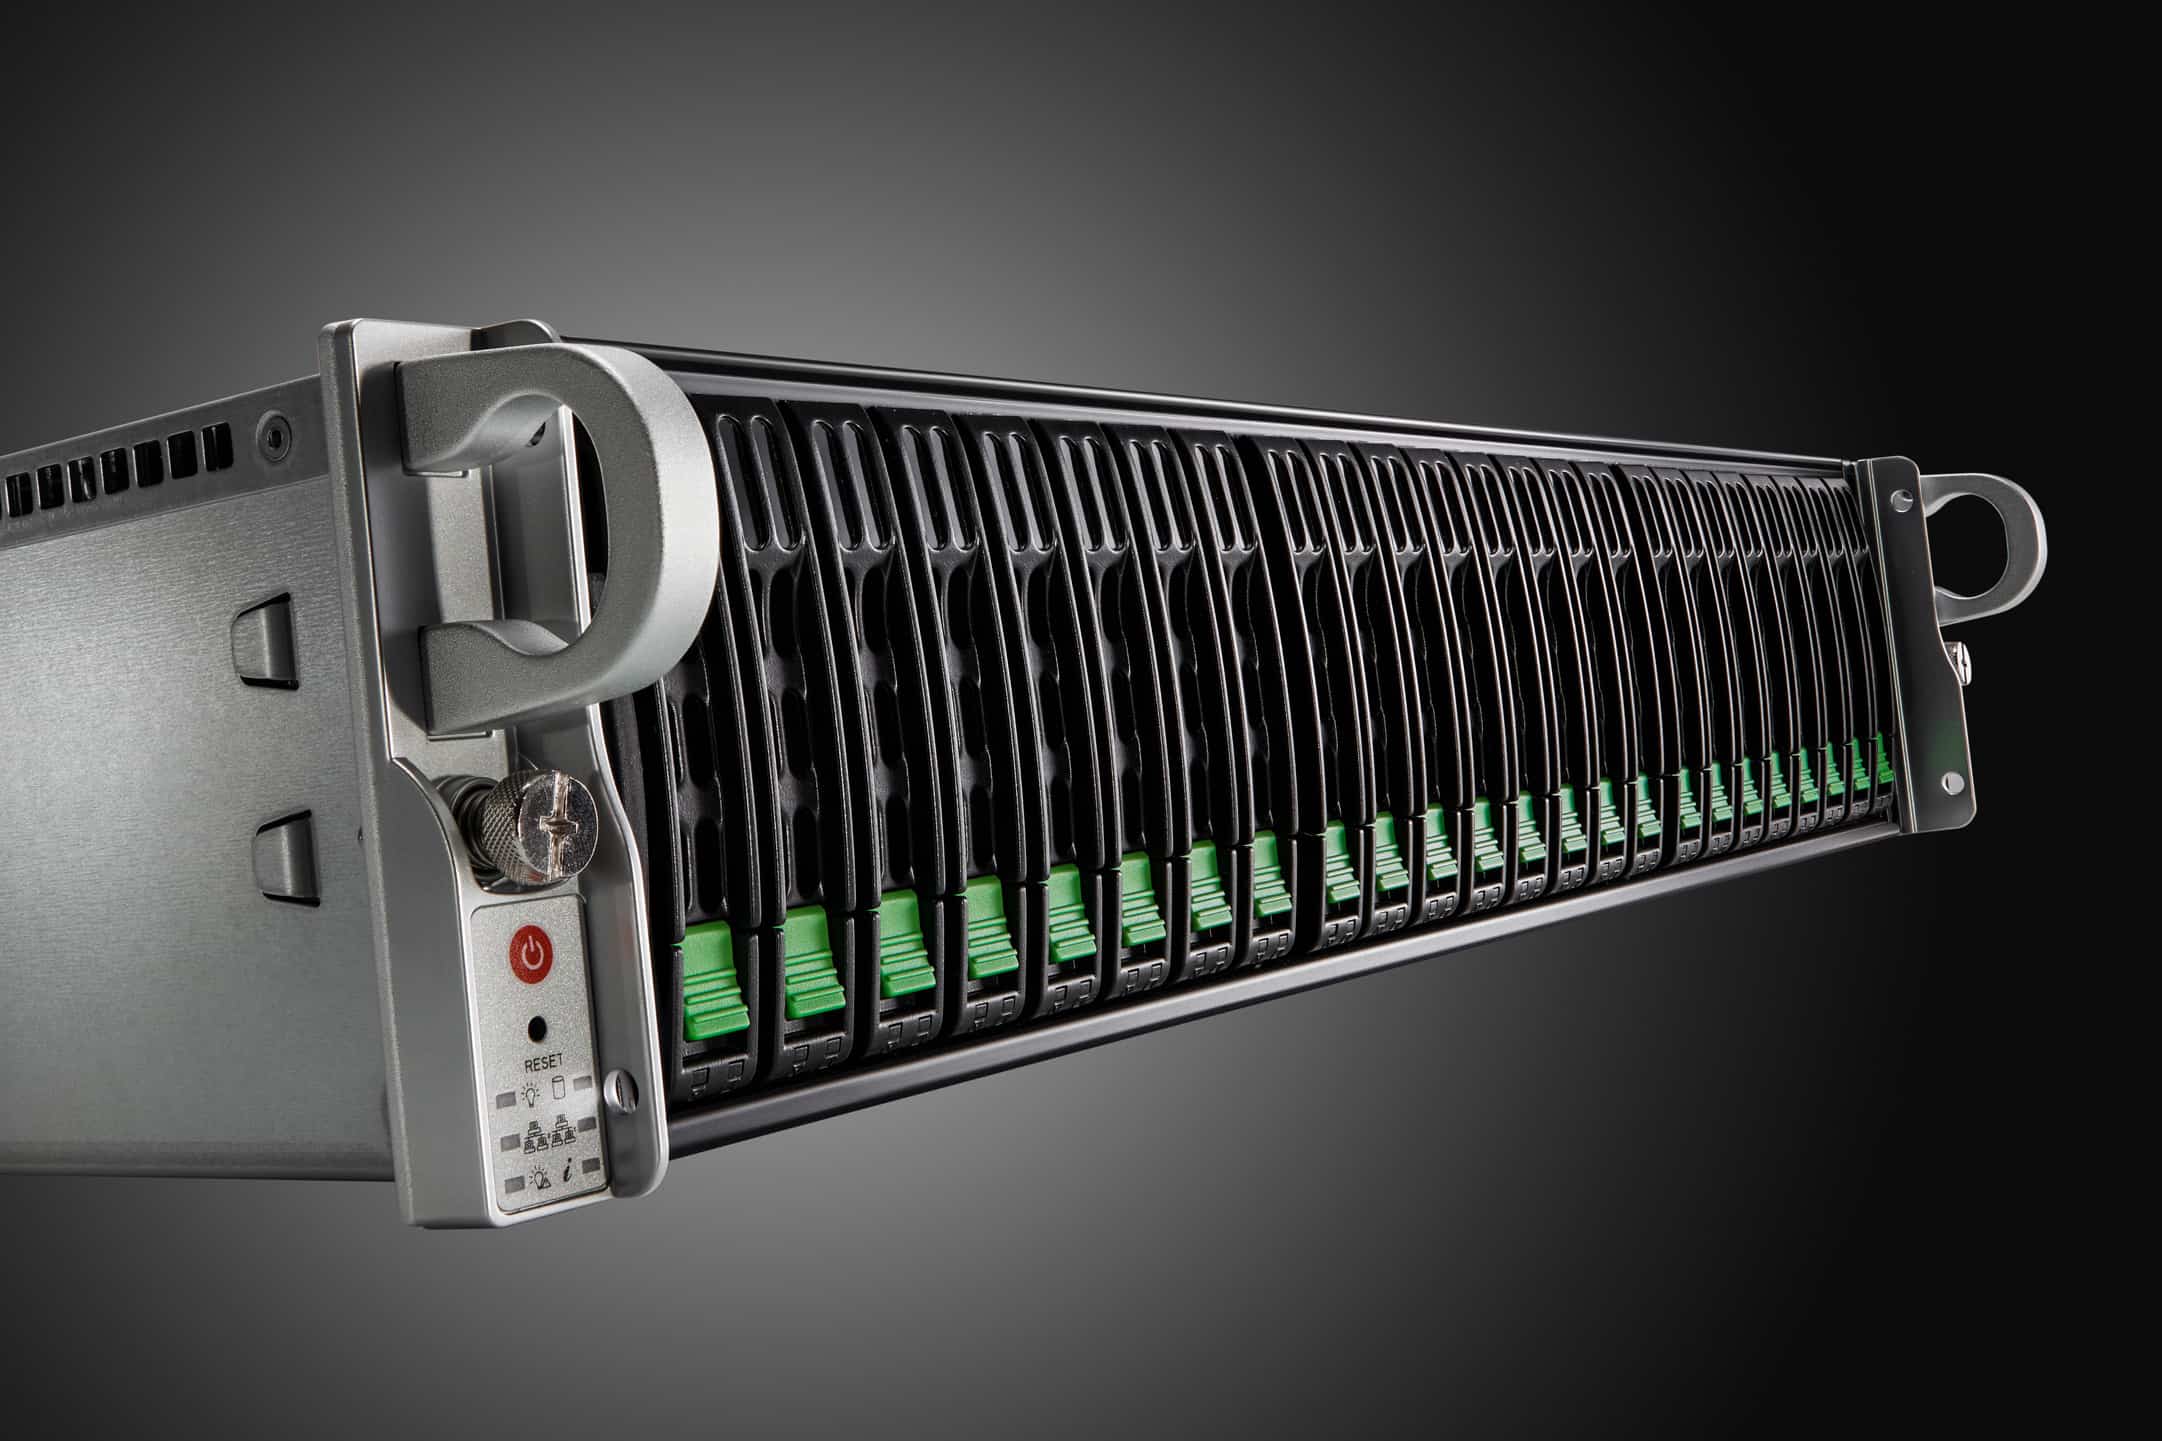 El nuevo servidor PRIMERGY RX de Fujitsu, basado en AMD, proporciona rápidamente información y valor de los datos